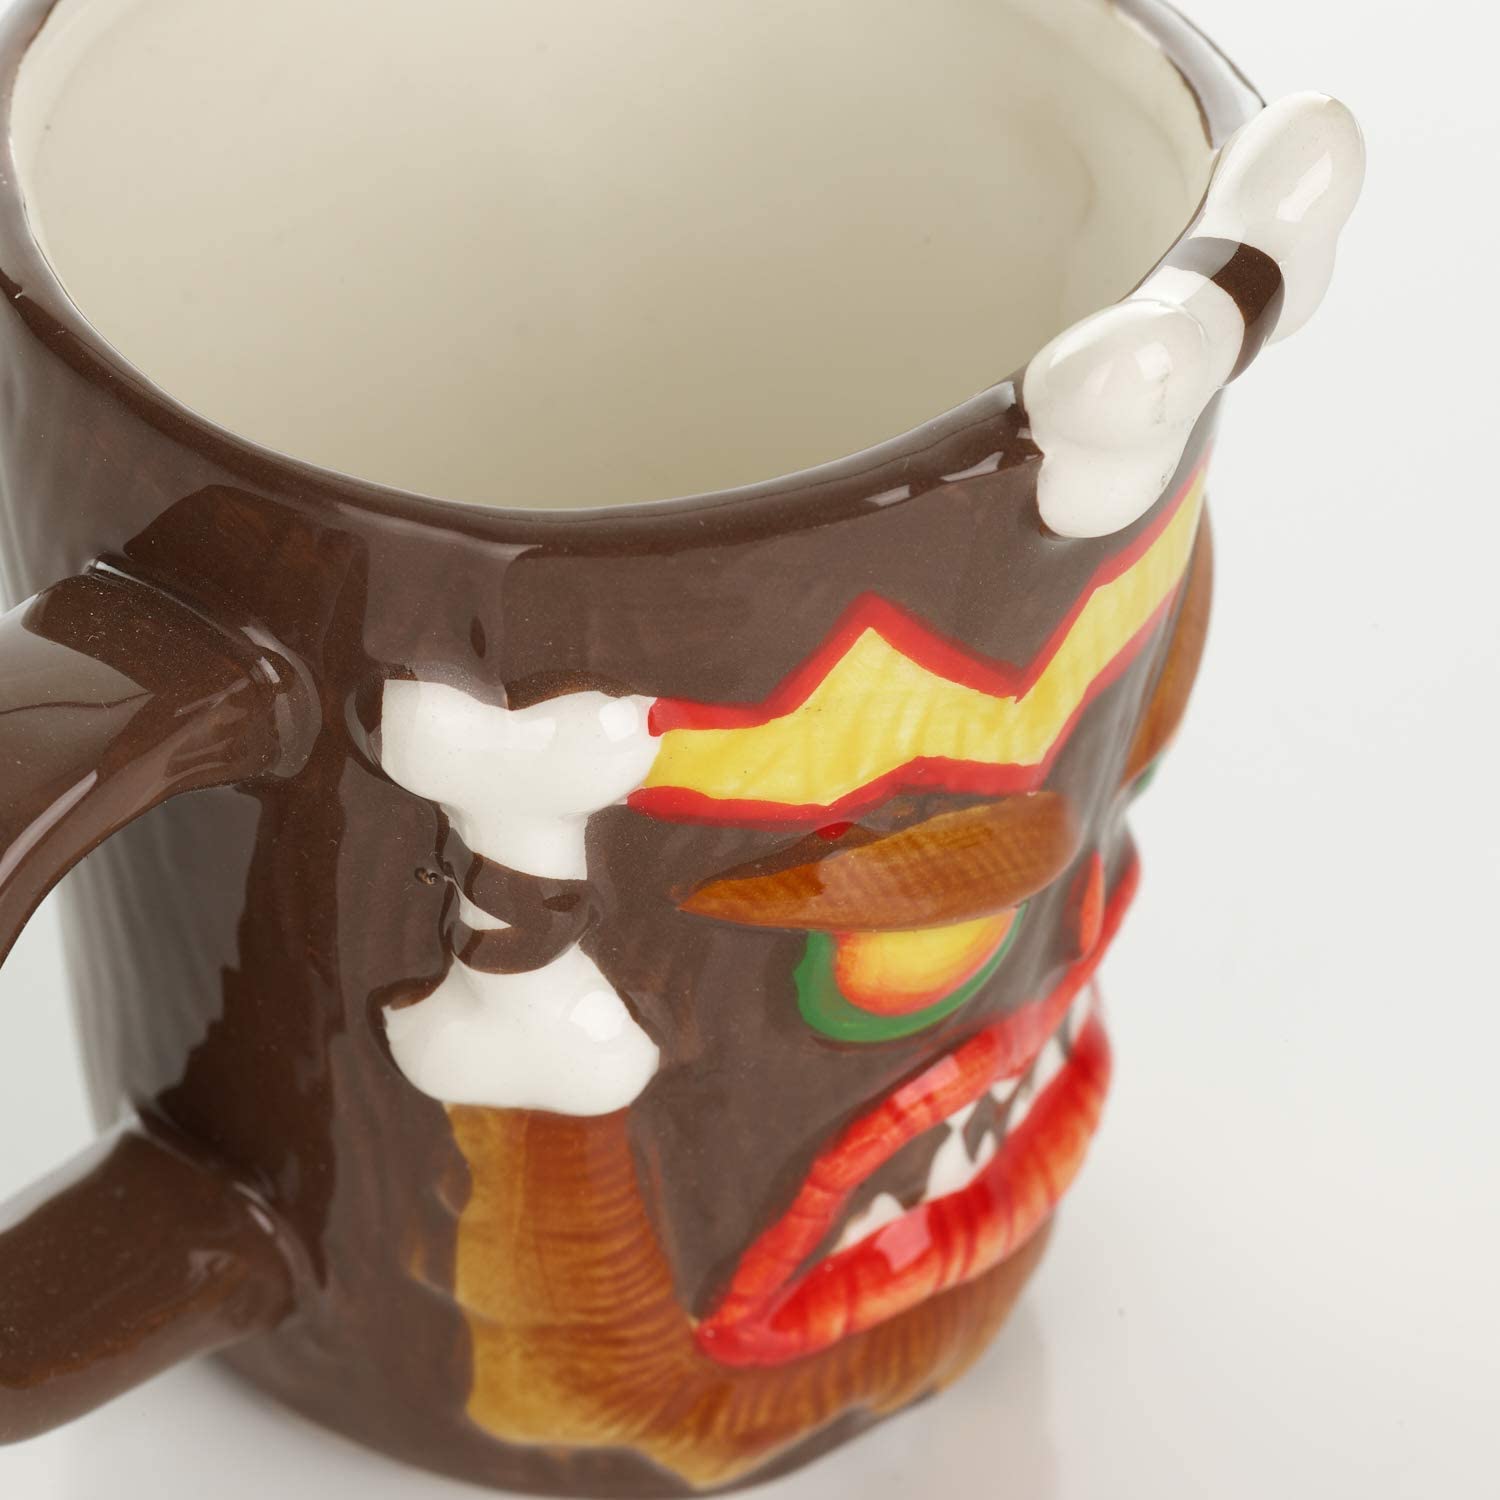 Crash Bandicoot - Uka Uka Shaped Mug